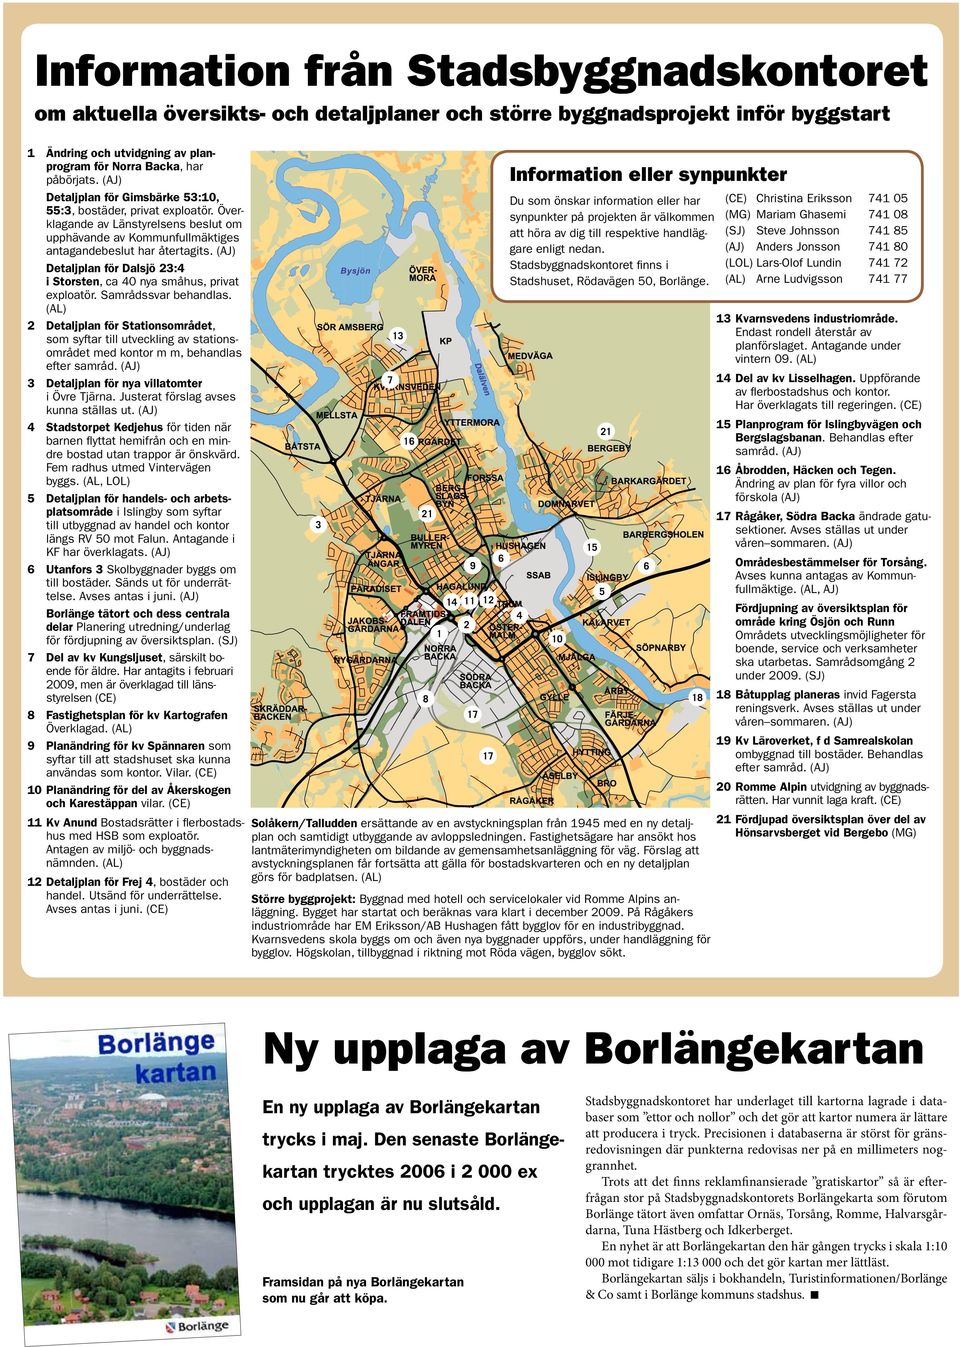 (AJ) Detaljplan för Dalsjö 23:4 i Storsten, ca 40 nya småhus, privat exploatör. Samrådssvar behandlas.